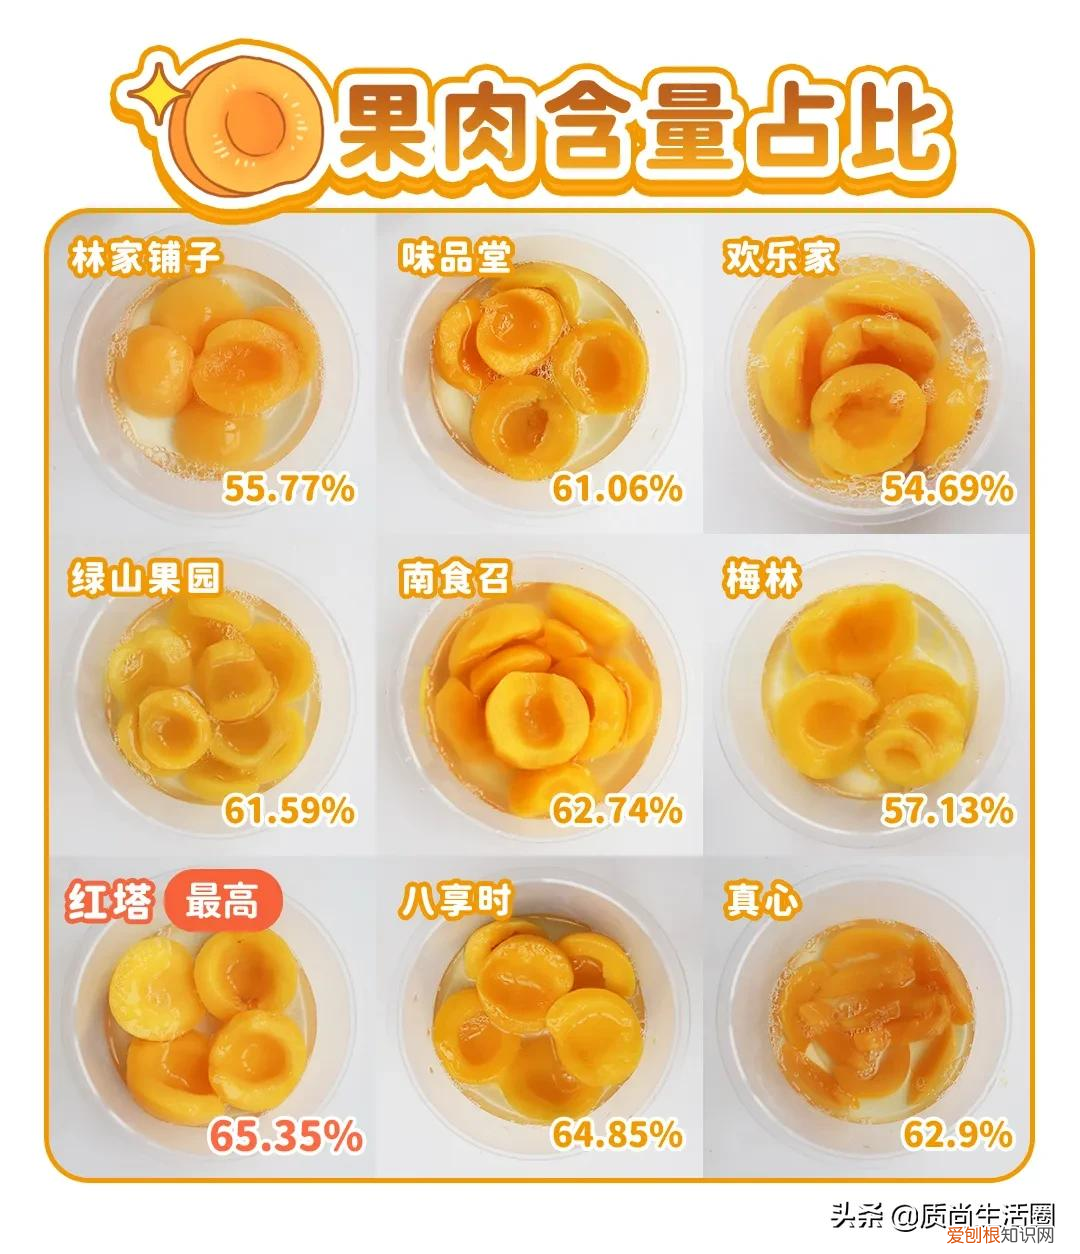 9款黄桃罐头对比测评